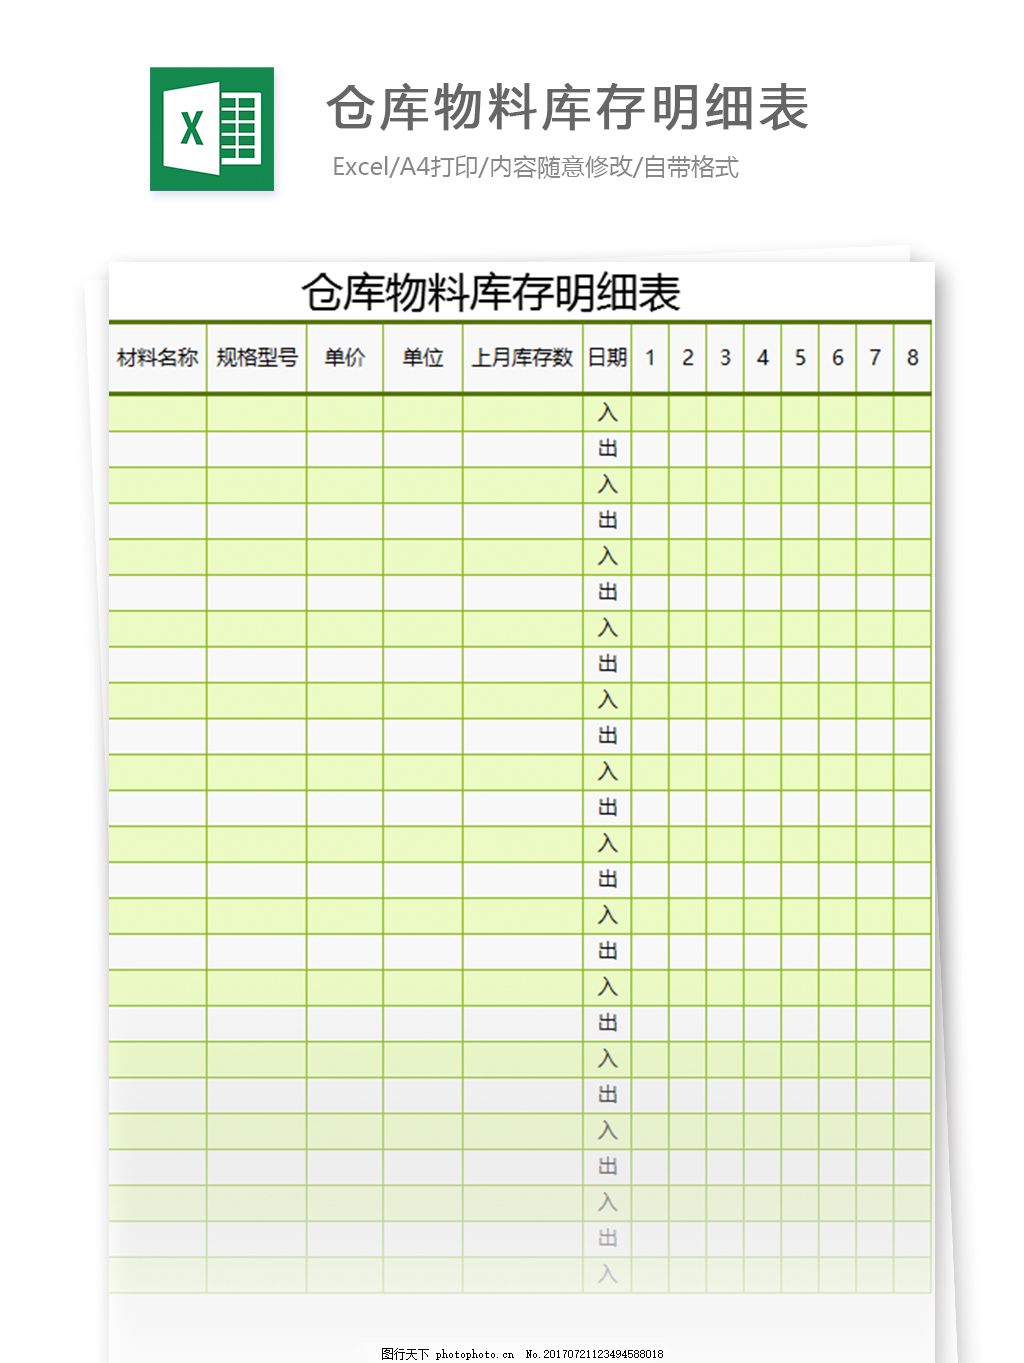 仓库进销存帐表Excel模板-制度管理表格素材下载-「W大师」